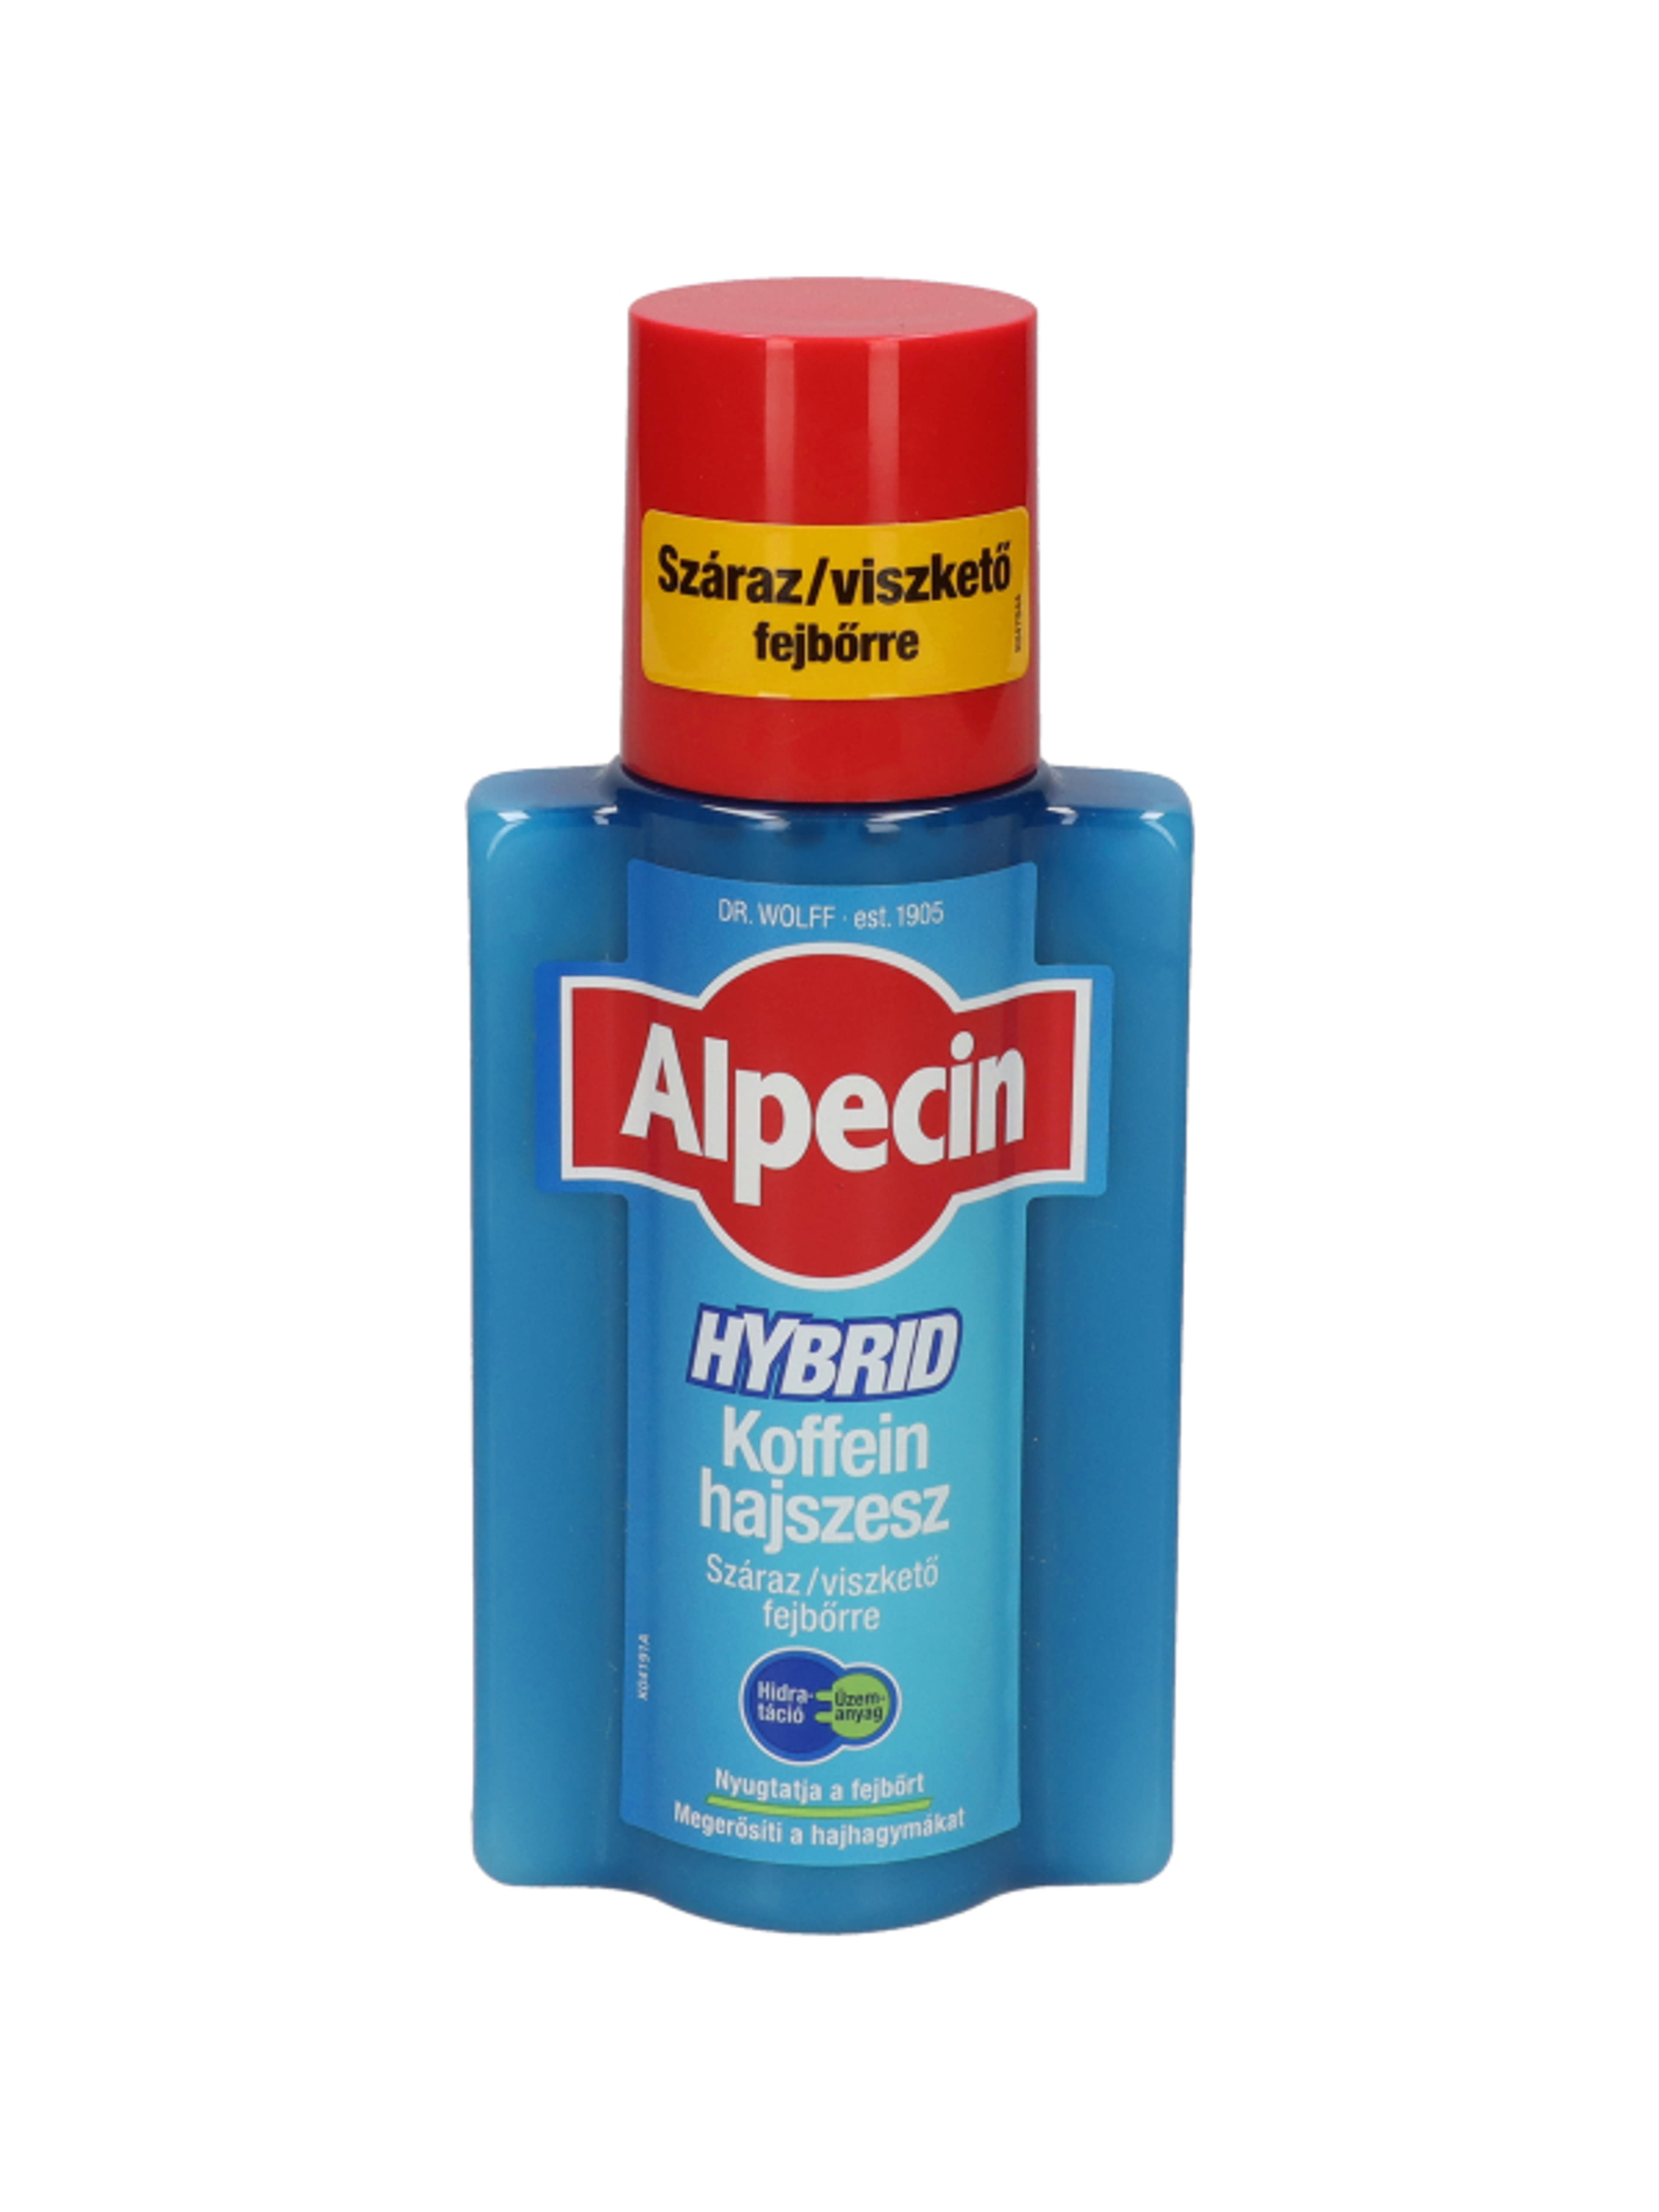 Alpecin hybrid koffein hajszesz - 200 ml-1